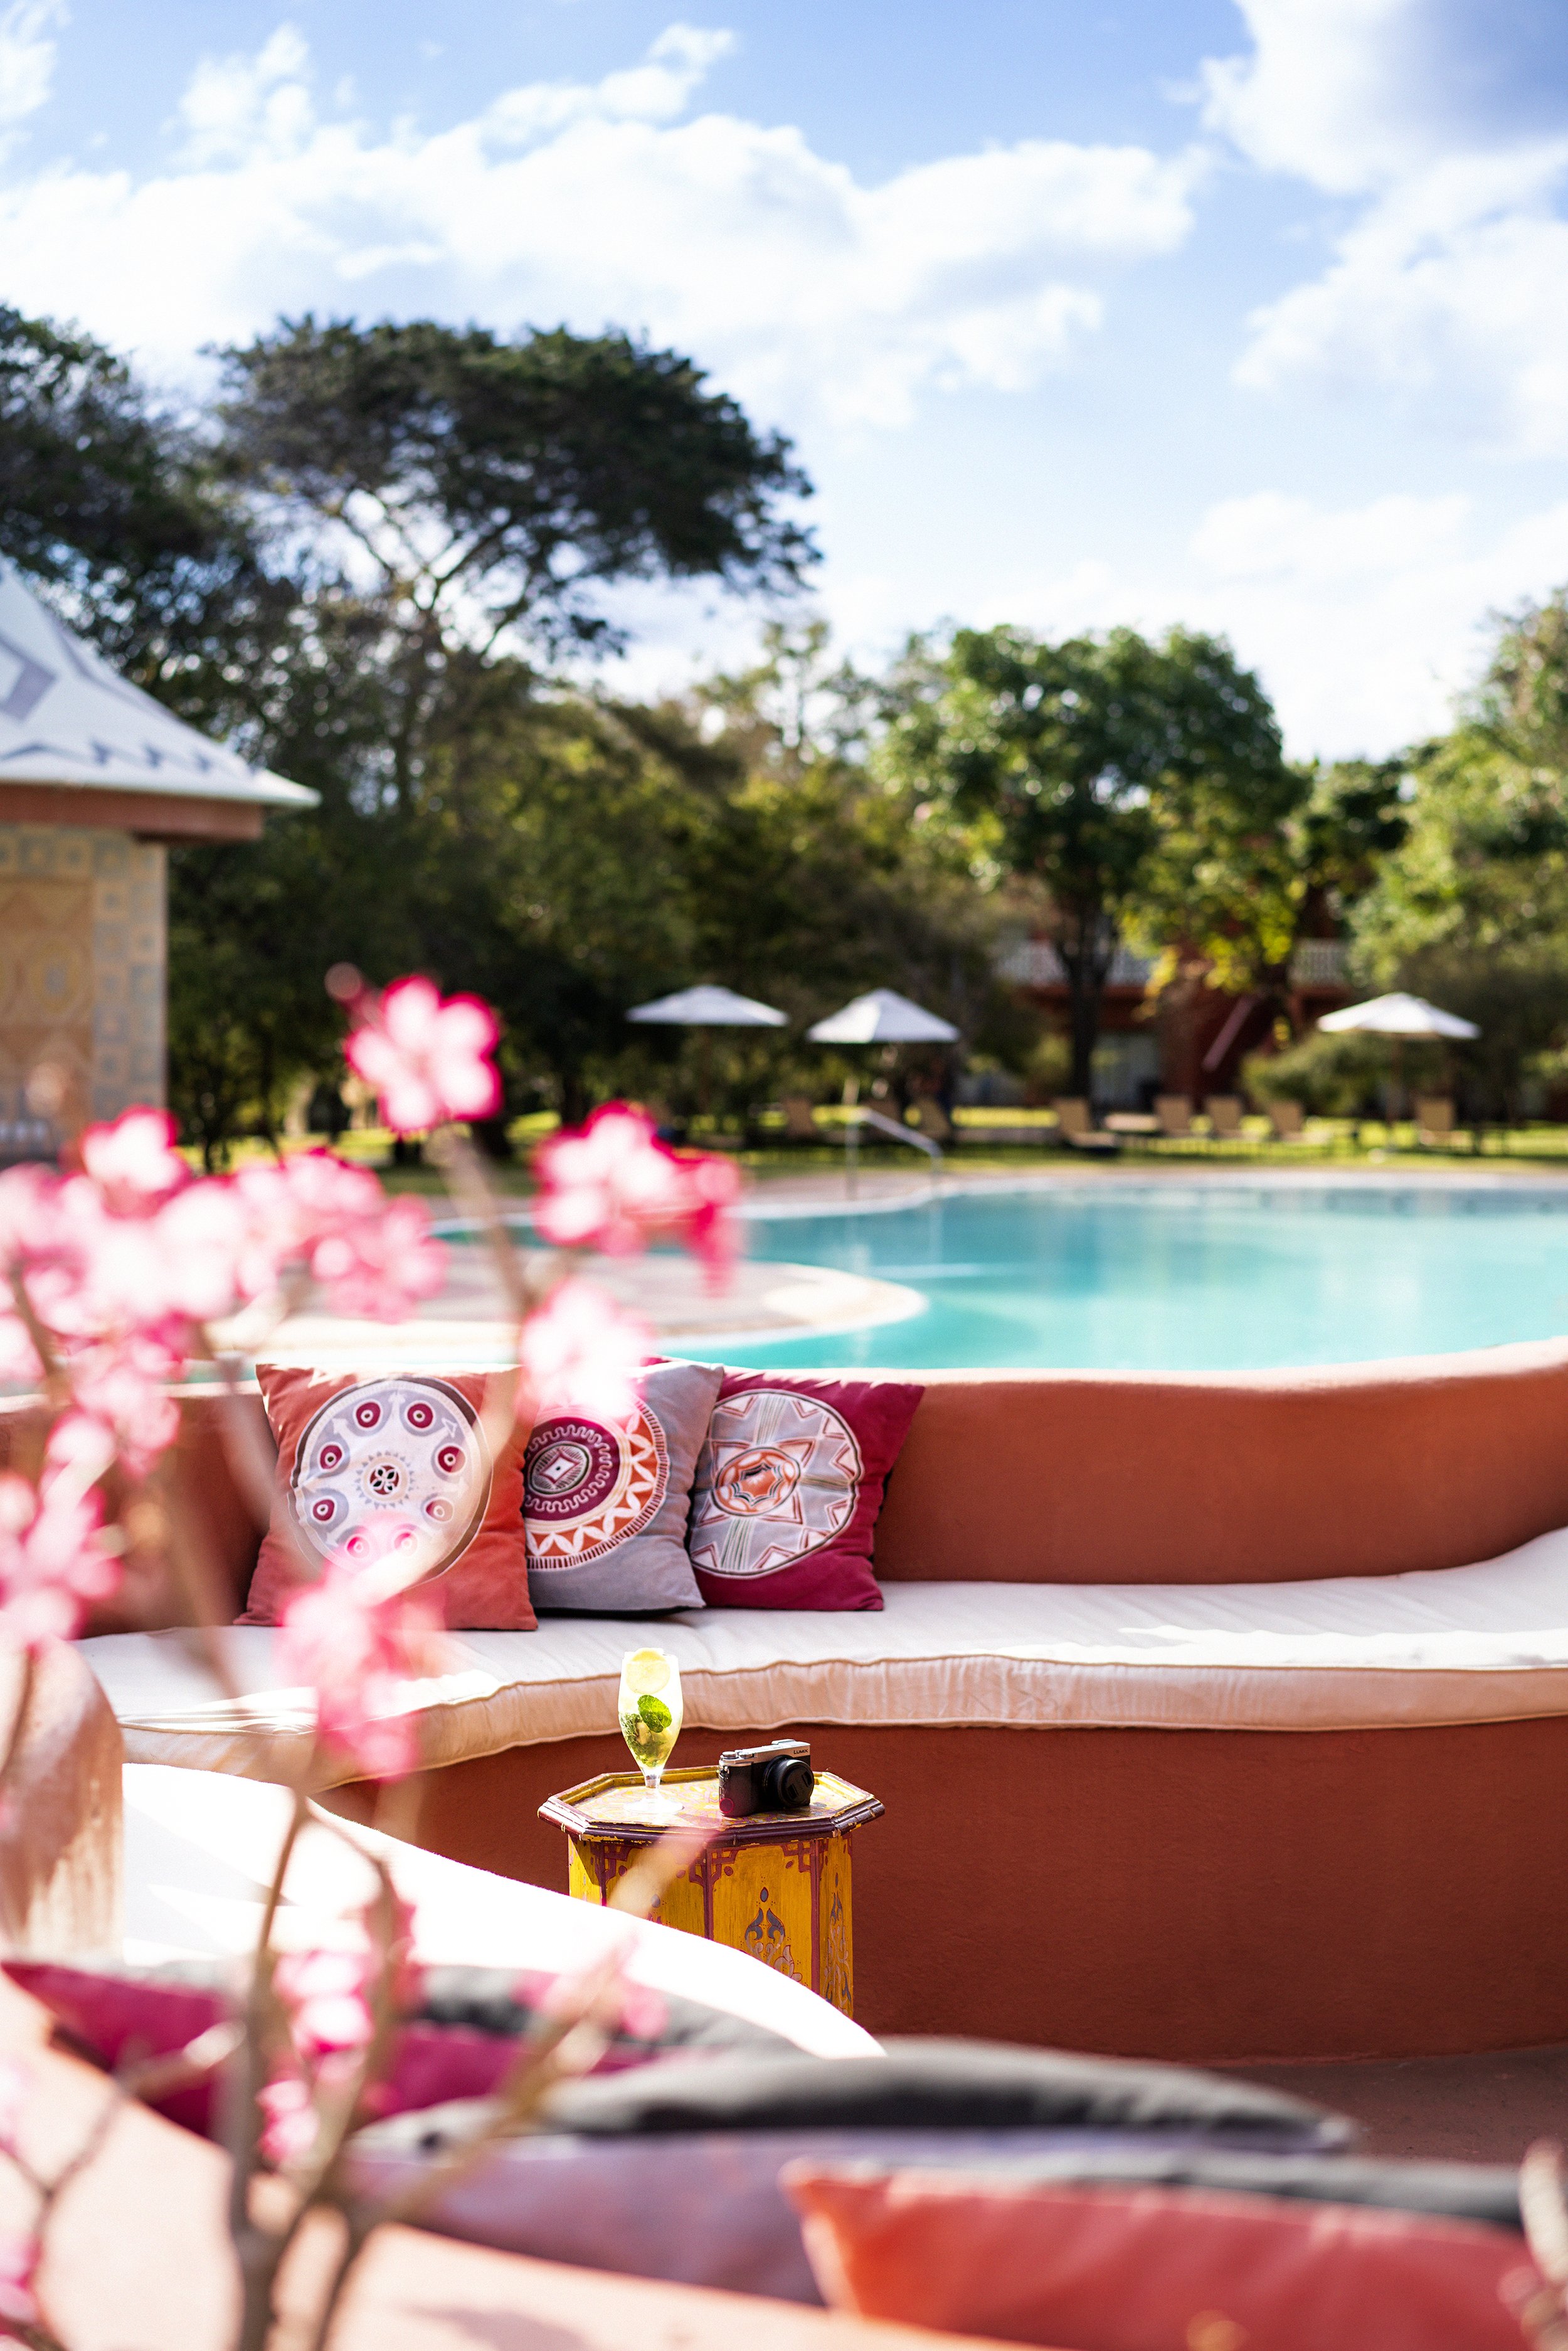 Avani_Victoria_Falls_Resort_Pool_View_Pool_Seating_With_Flowers.jpg